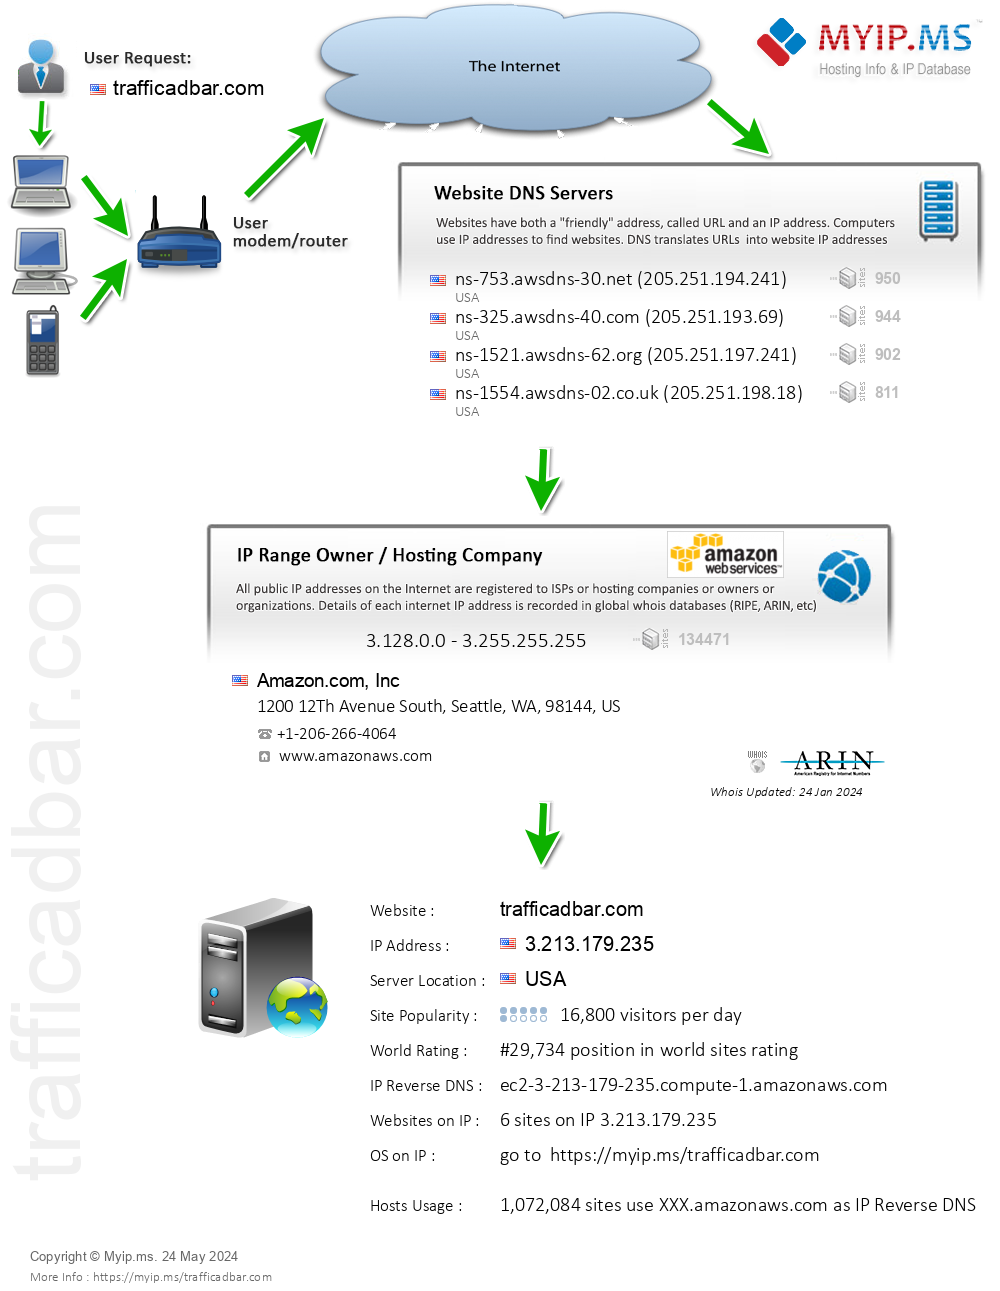 Trafficadbar.com - Website Hosting Visual IP Diagram